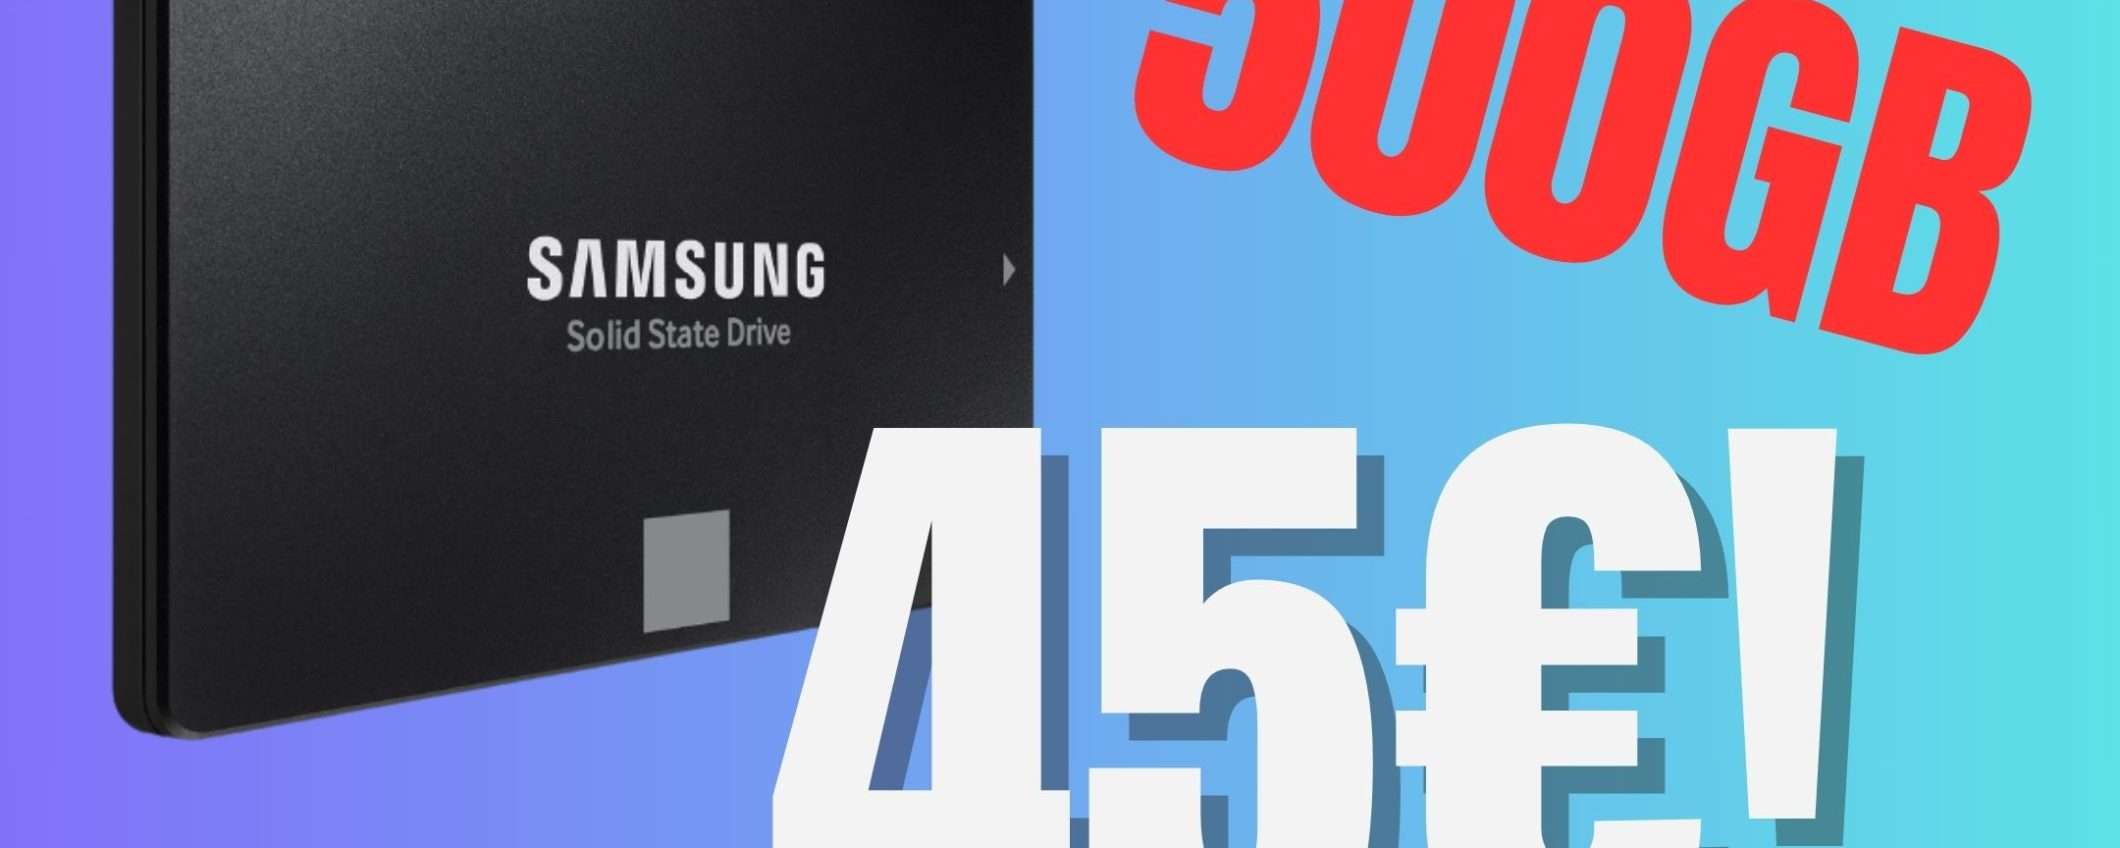 Rinnova il tuo vecchio PC con meno di 50€ grazie all'SSD Samsung!